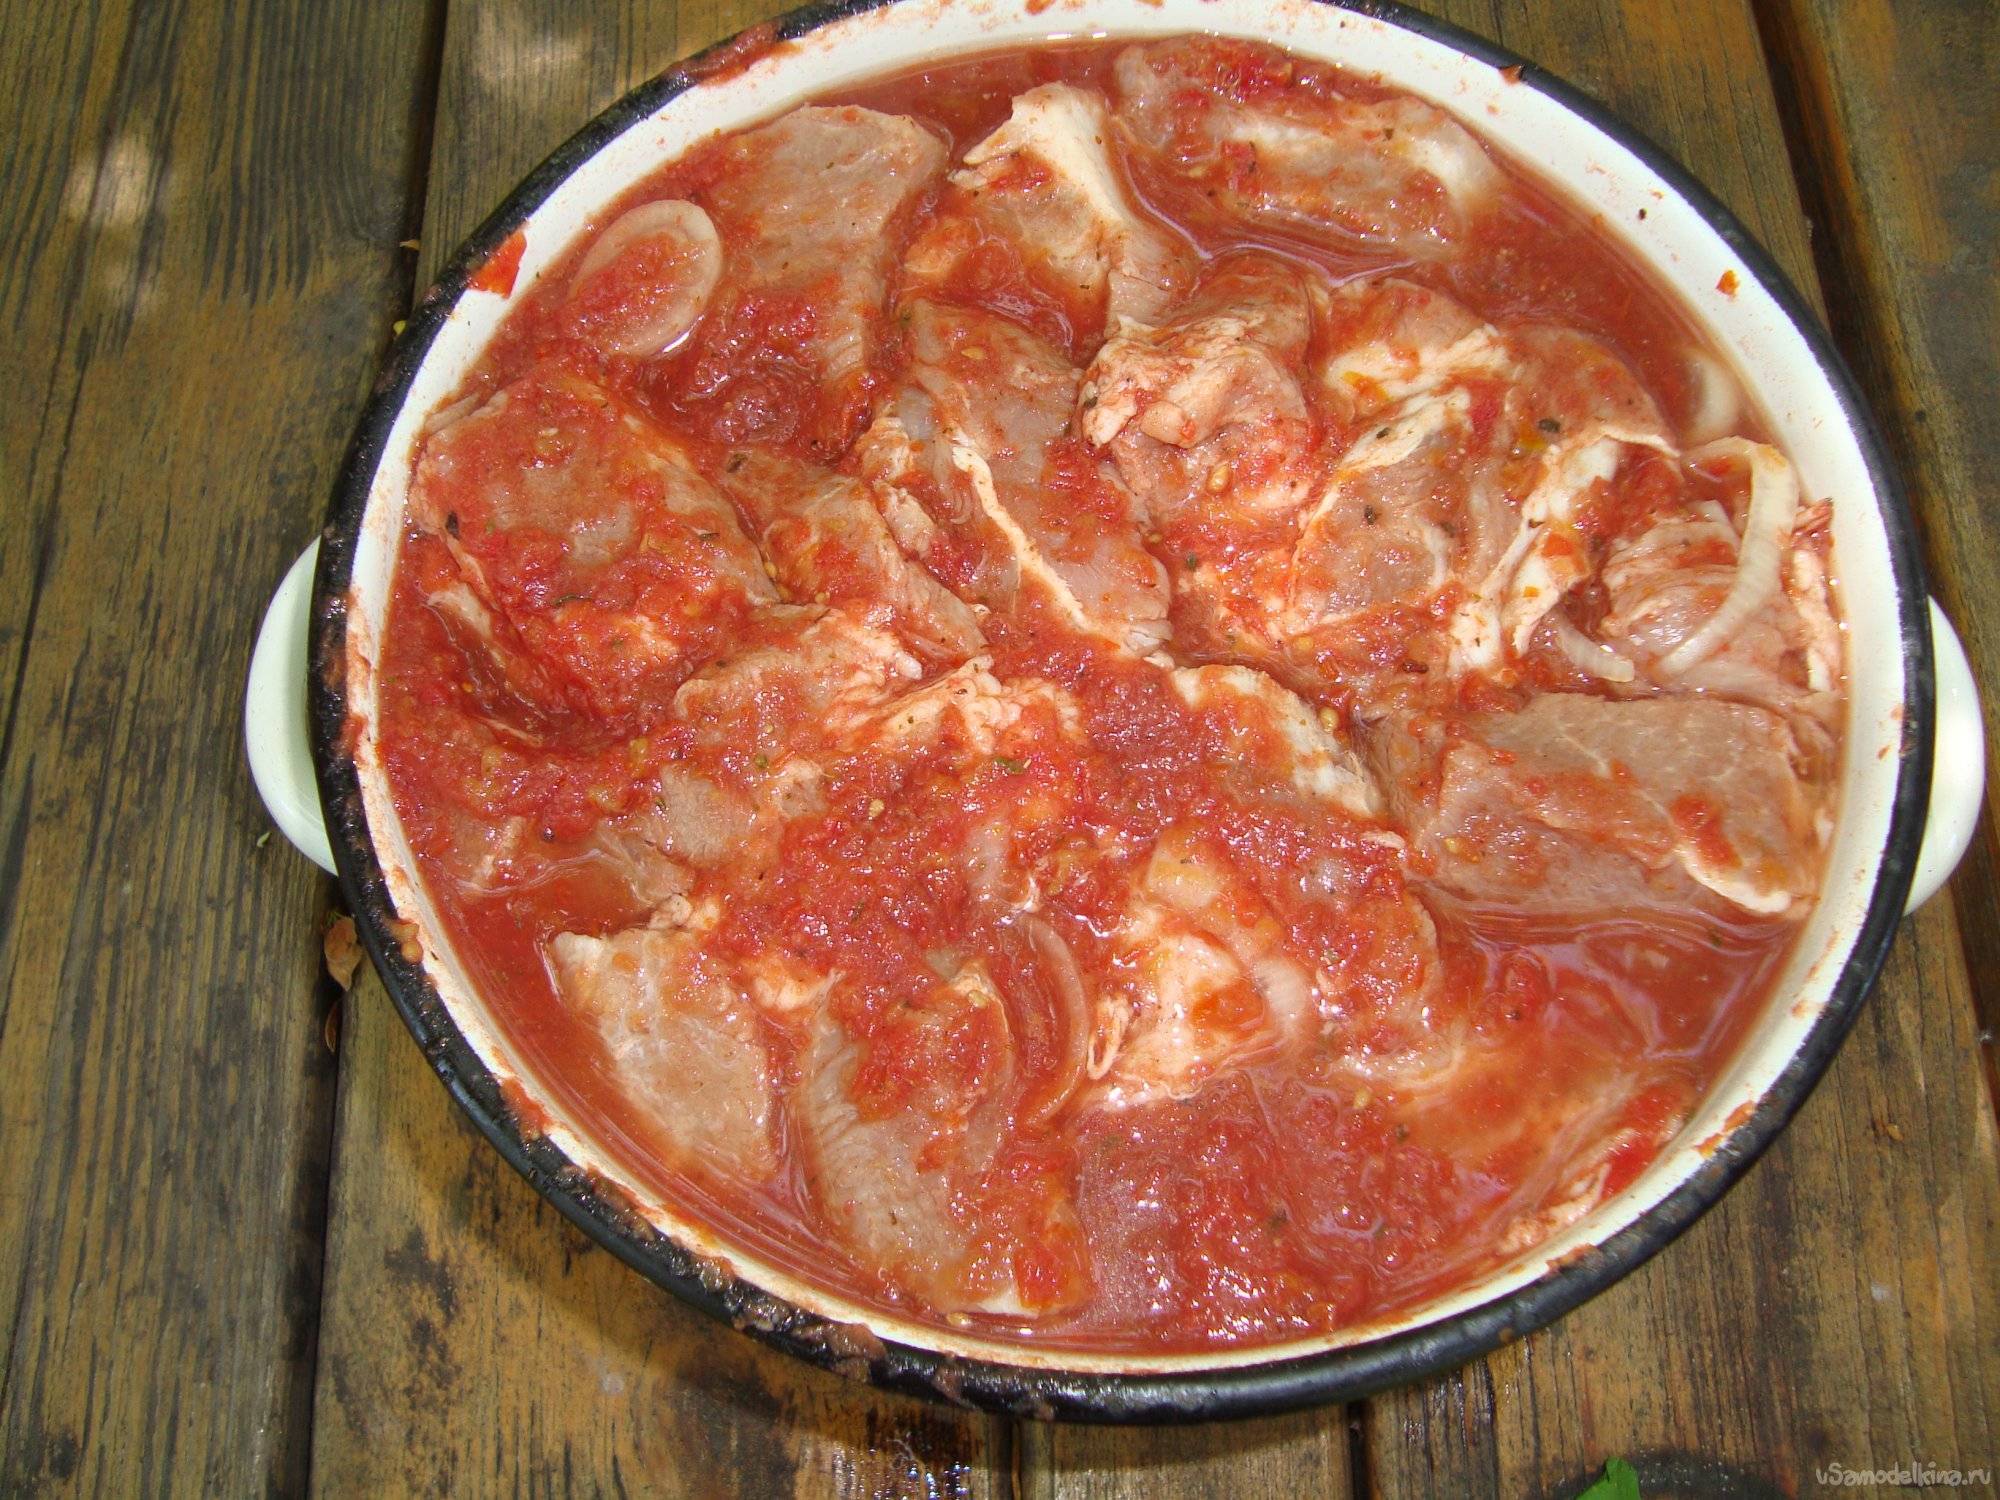 Шашлык в томатном соусе - пошаговый домашний рецепт